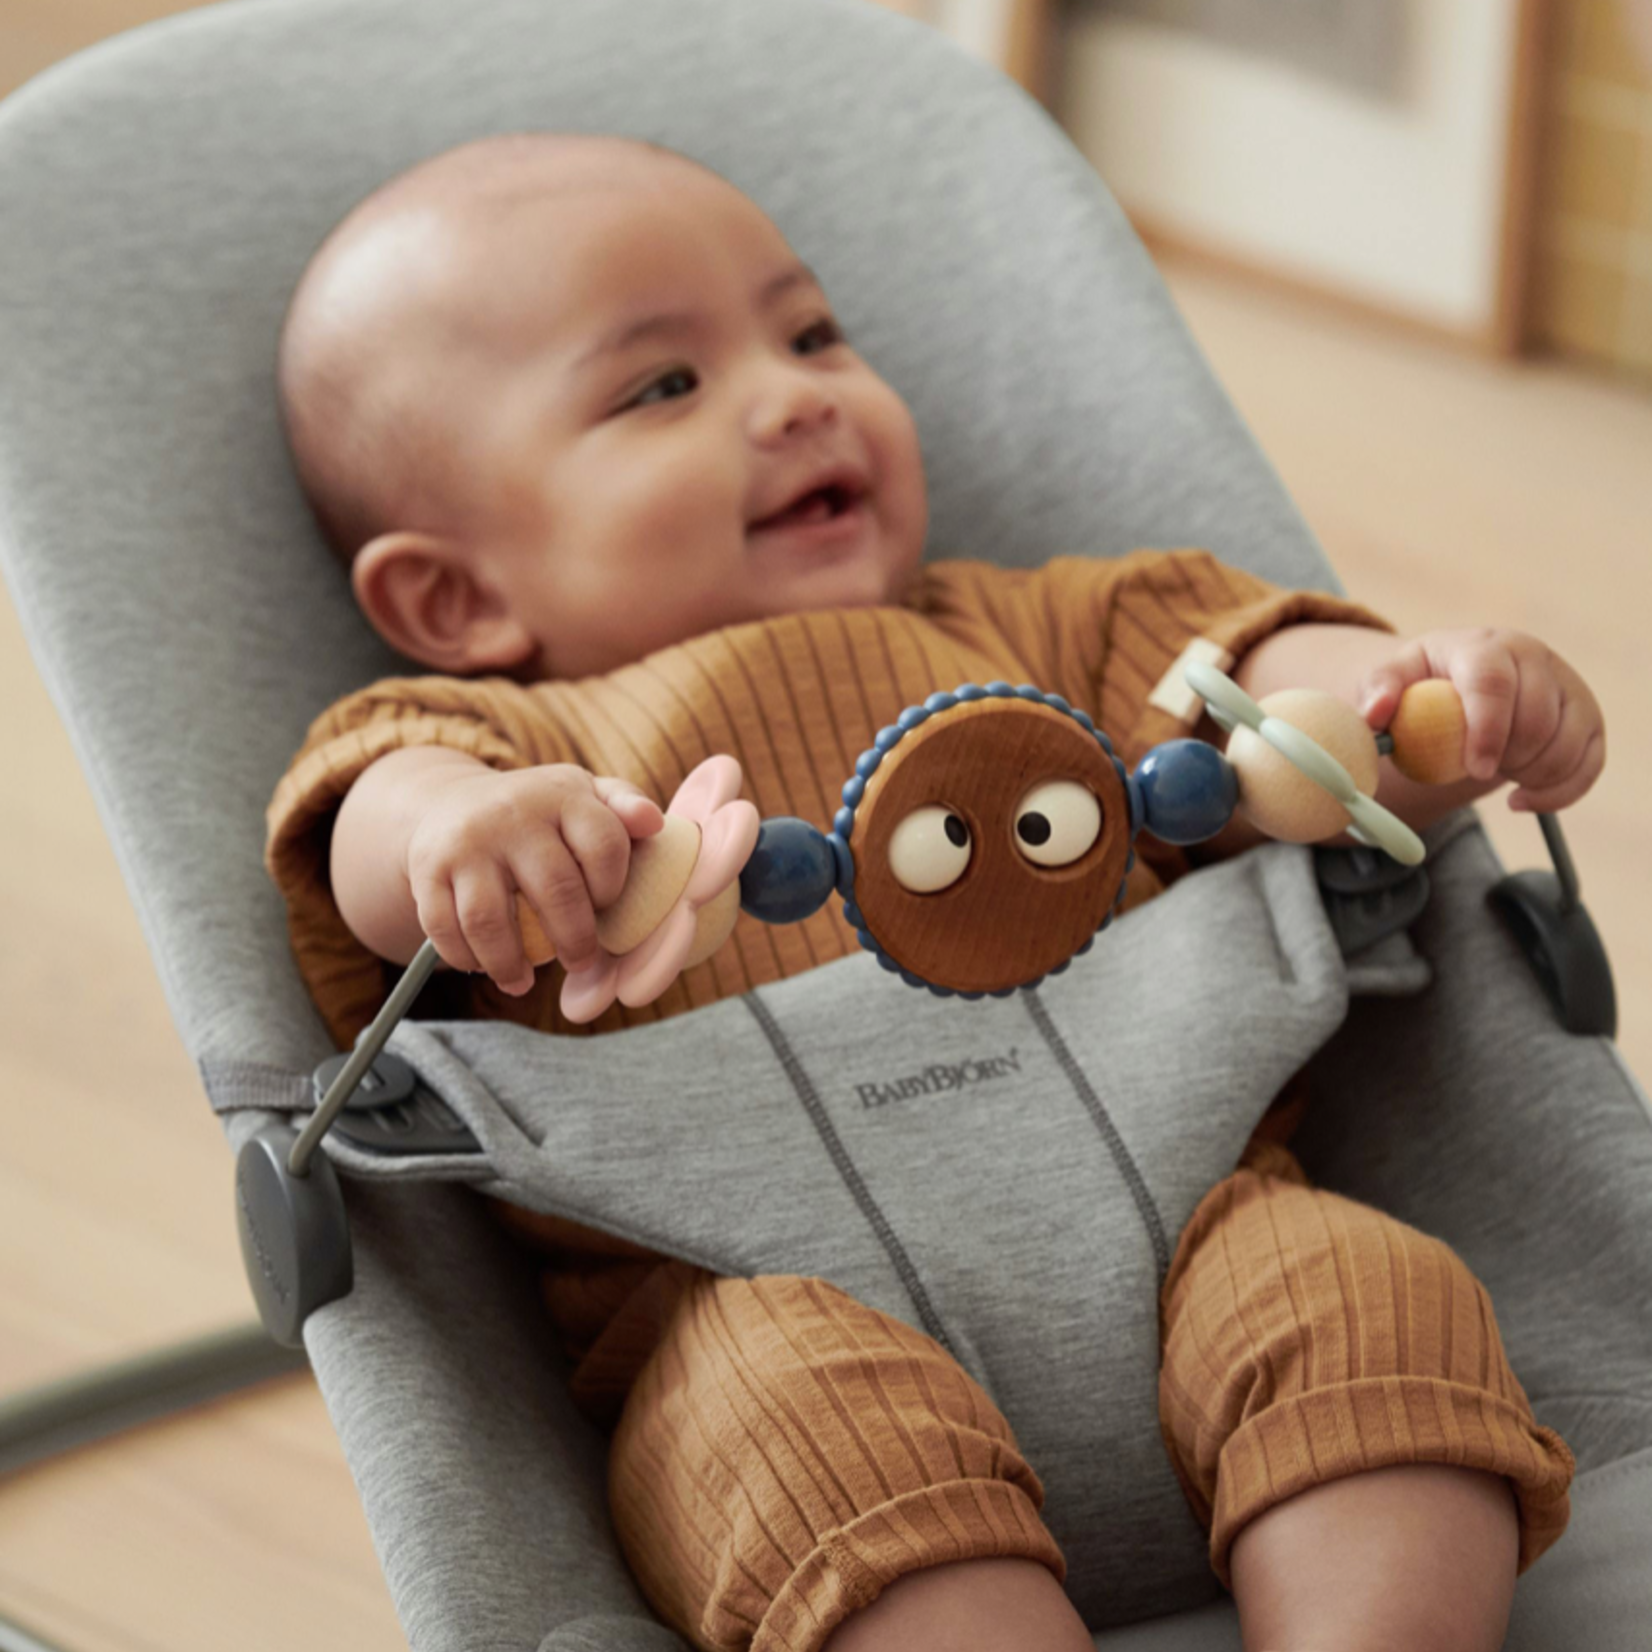 Babybjorn Babybjorn - Speelgoed voor Wipstoeltje Ondeugende oogjes Pastel